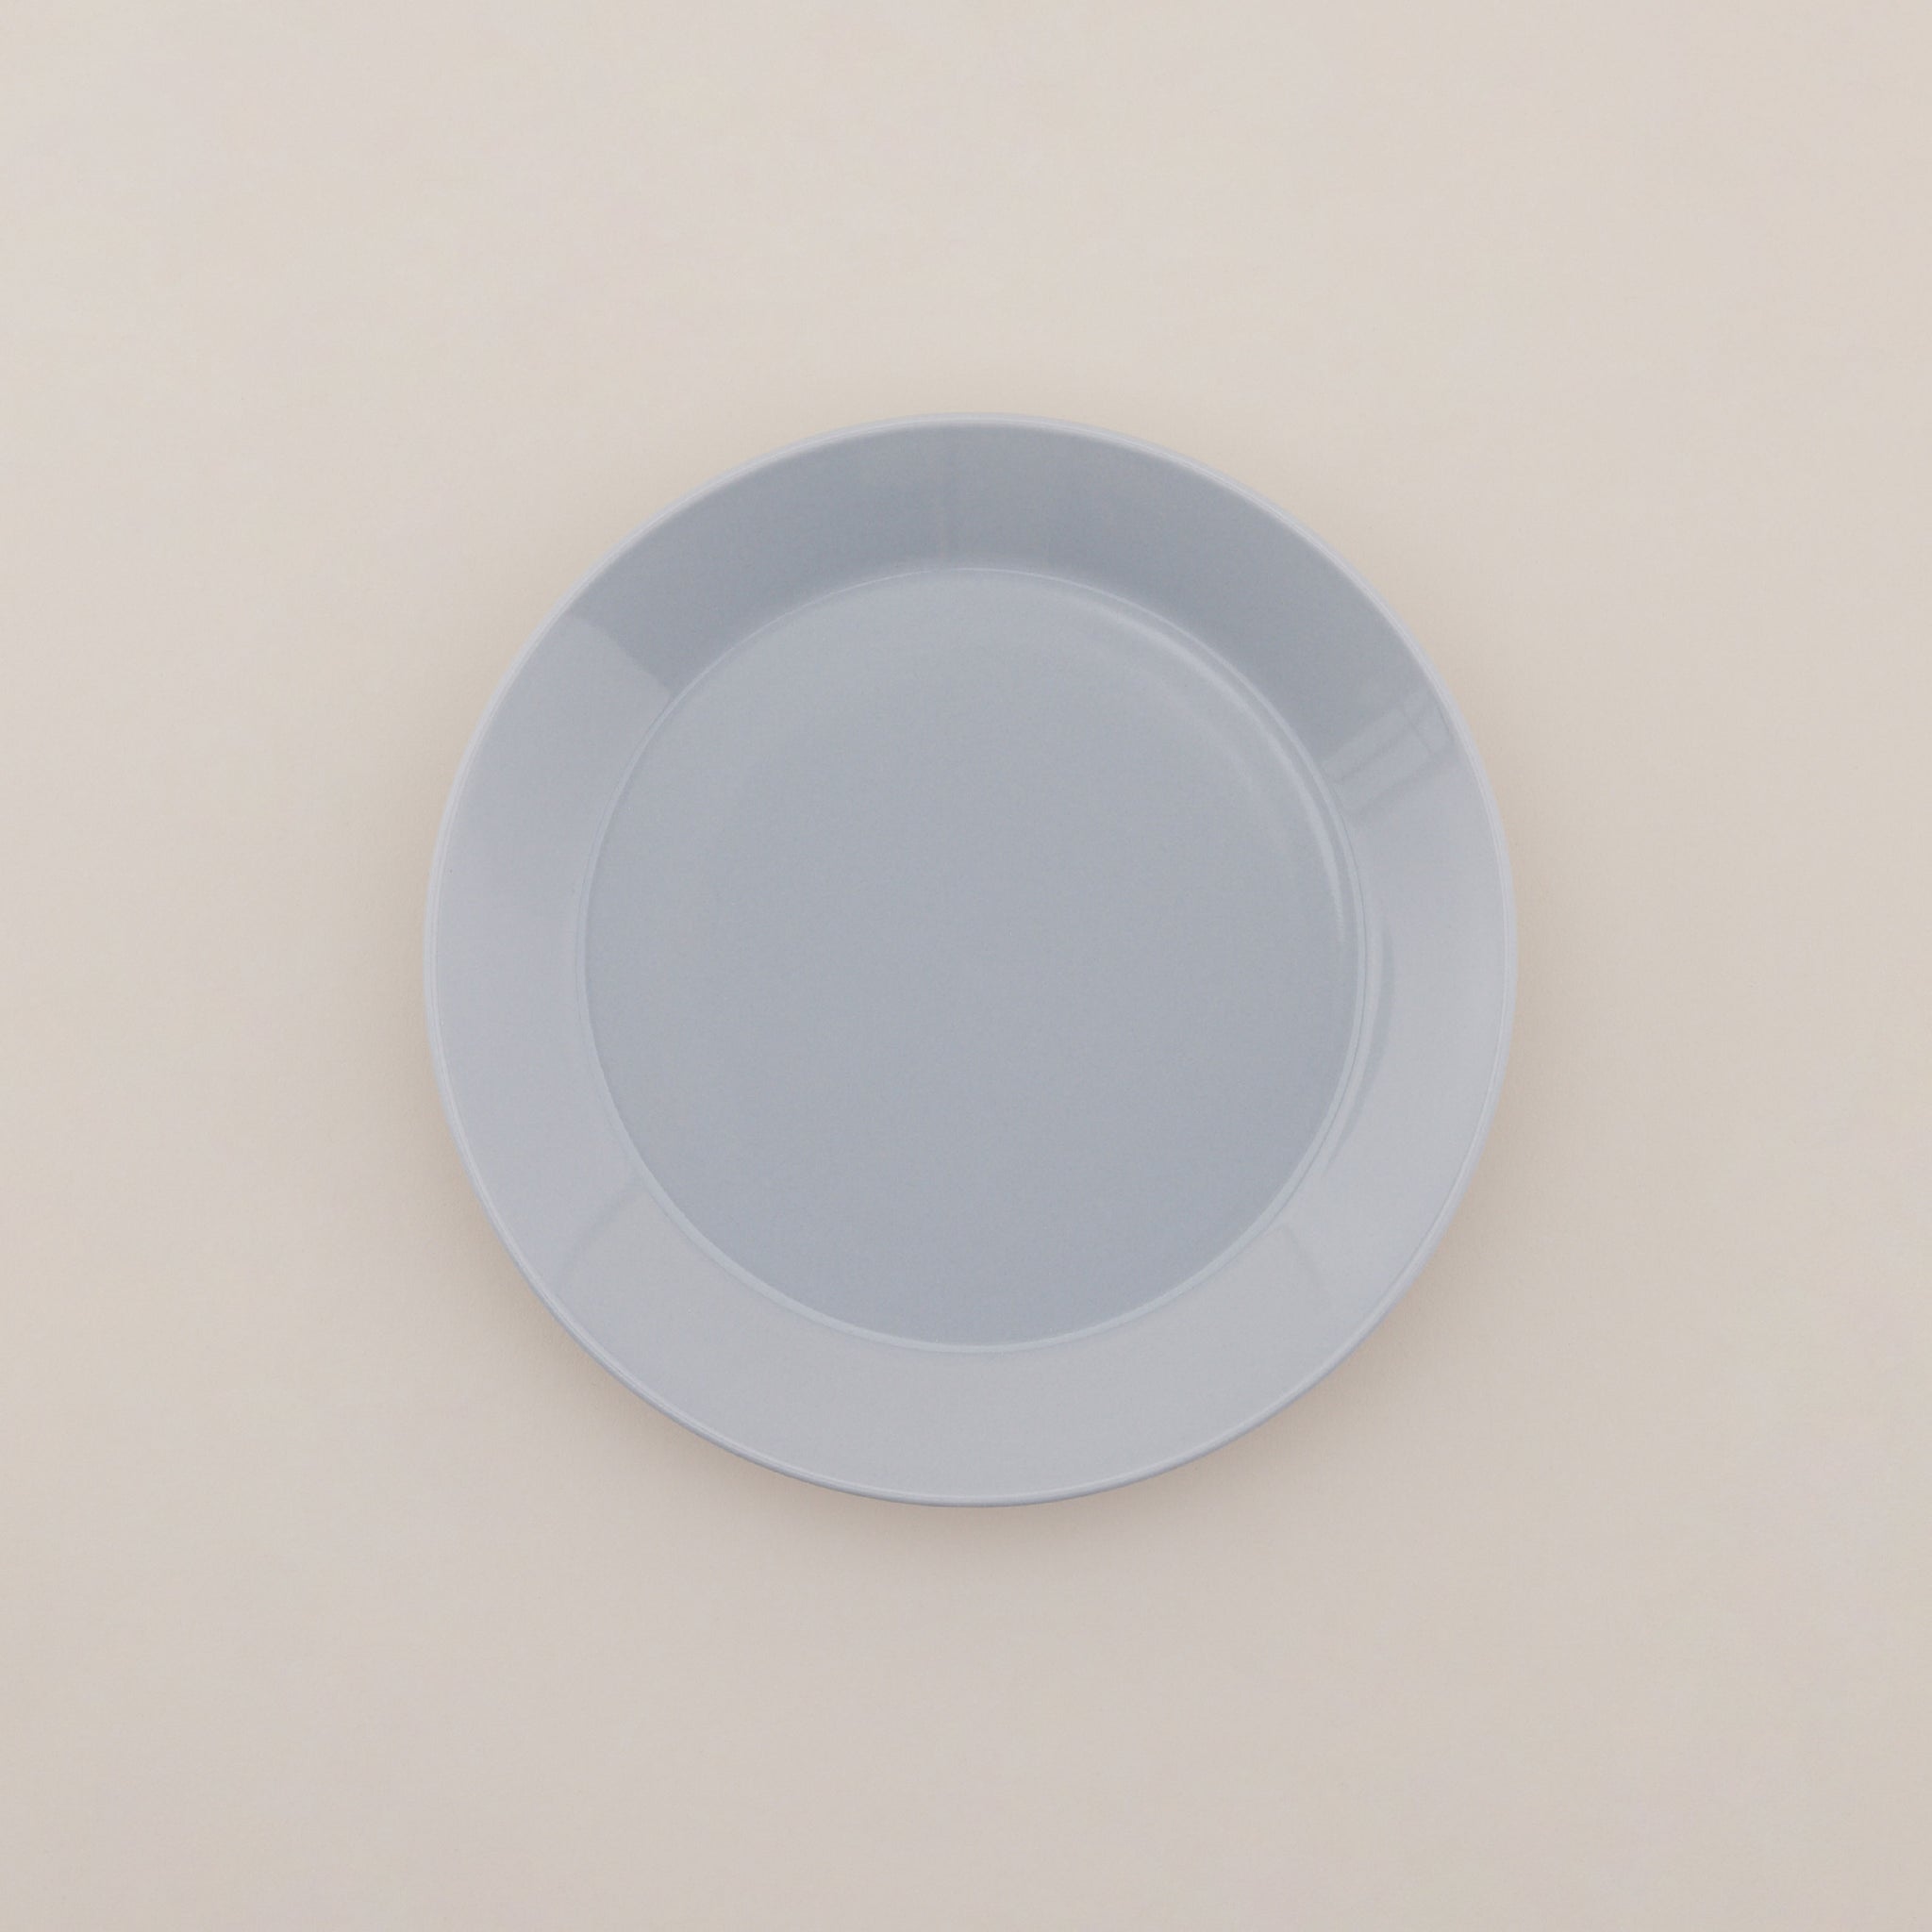 Bowlbowl Ceramic Urban Plate | จานเซรามิก